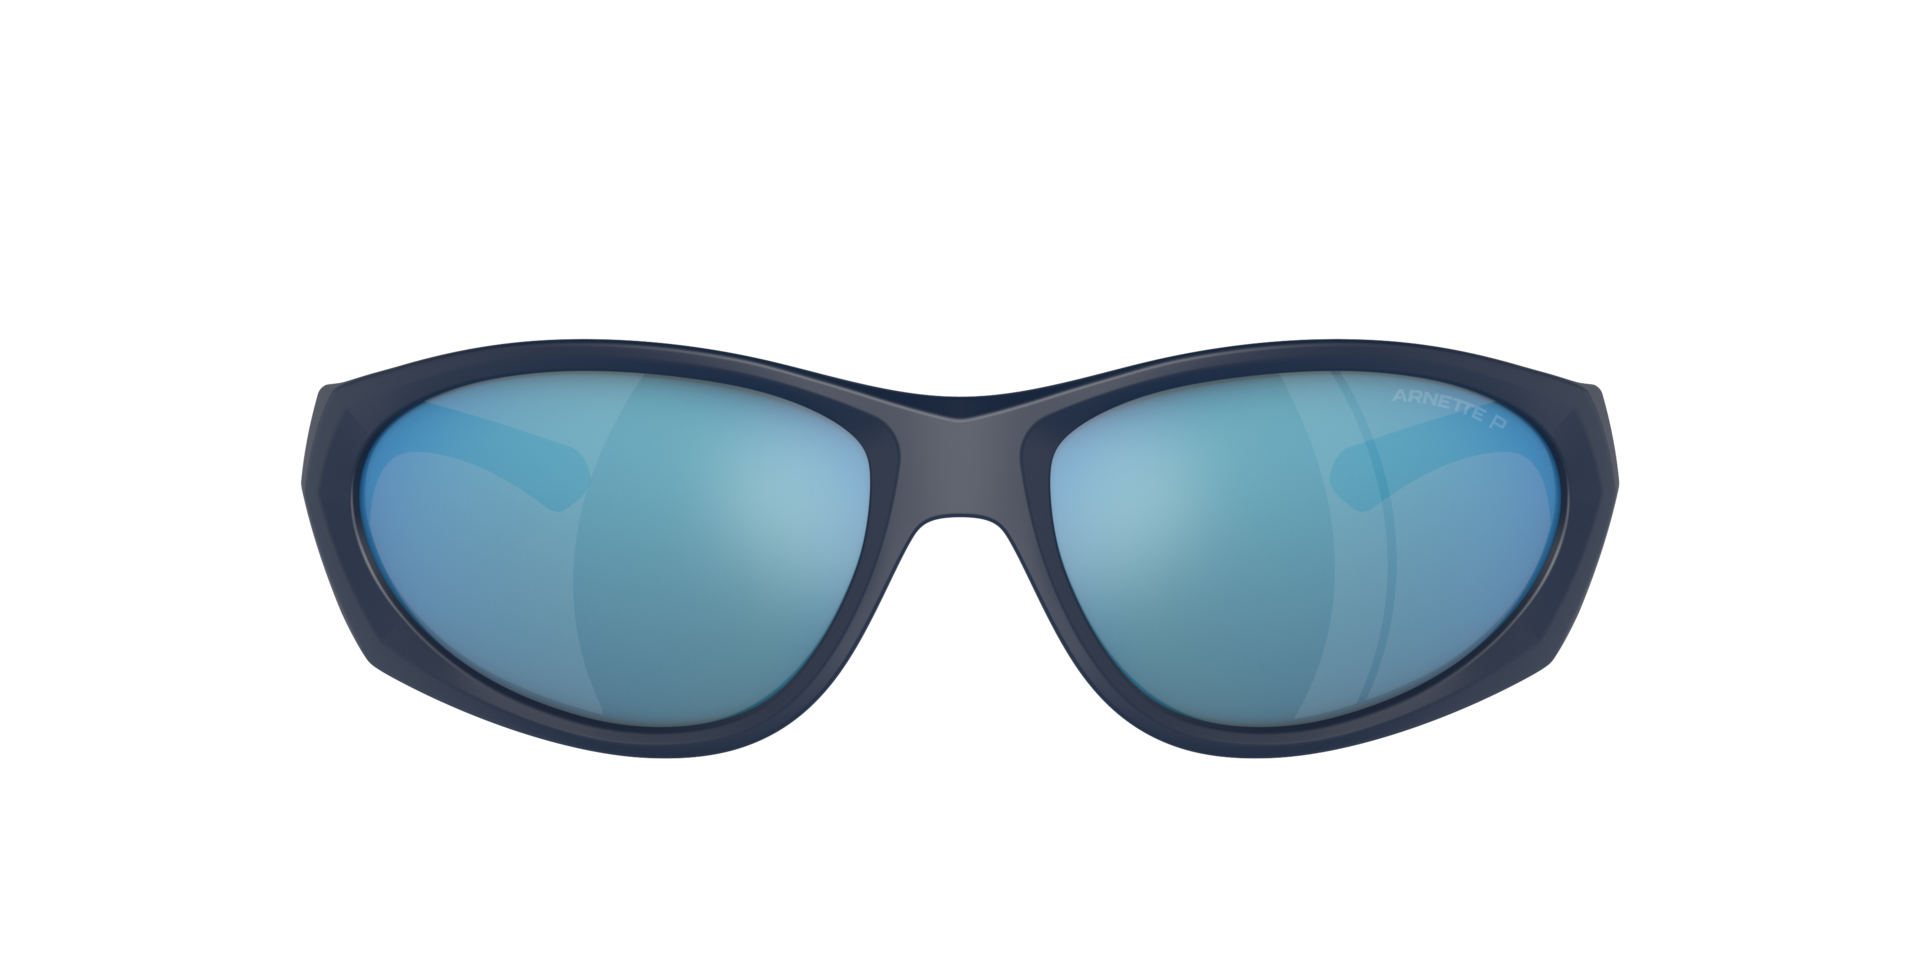 Das Bild zeigt die Sonnenbrille AN4342 275922 von der Marke Arnette in schwarz/blau.